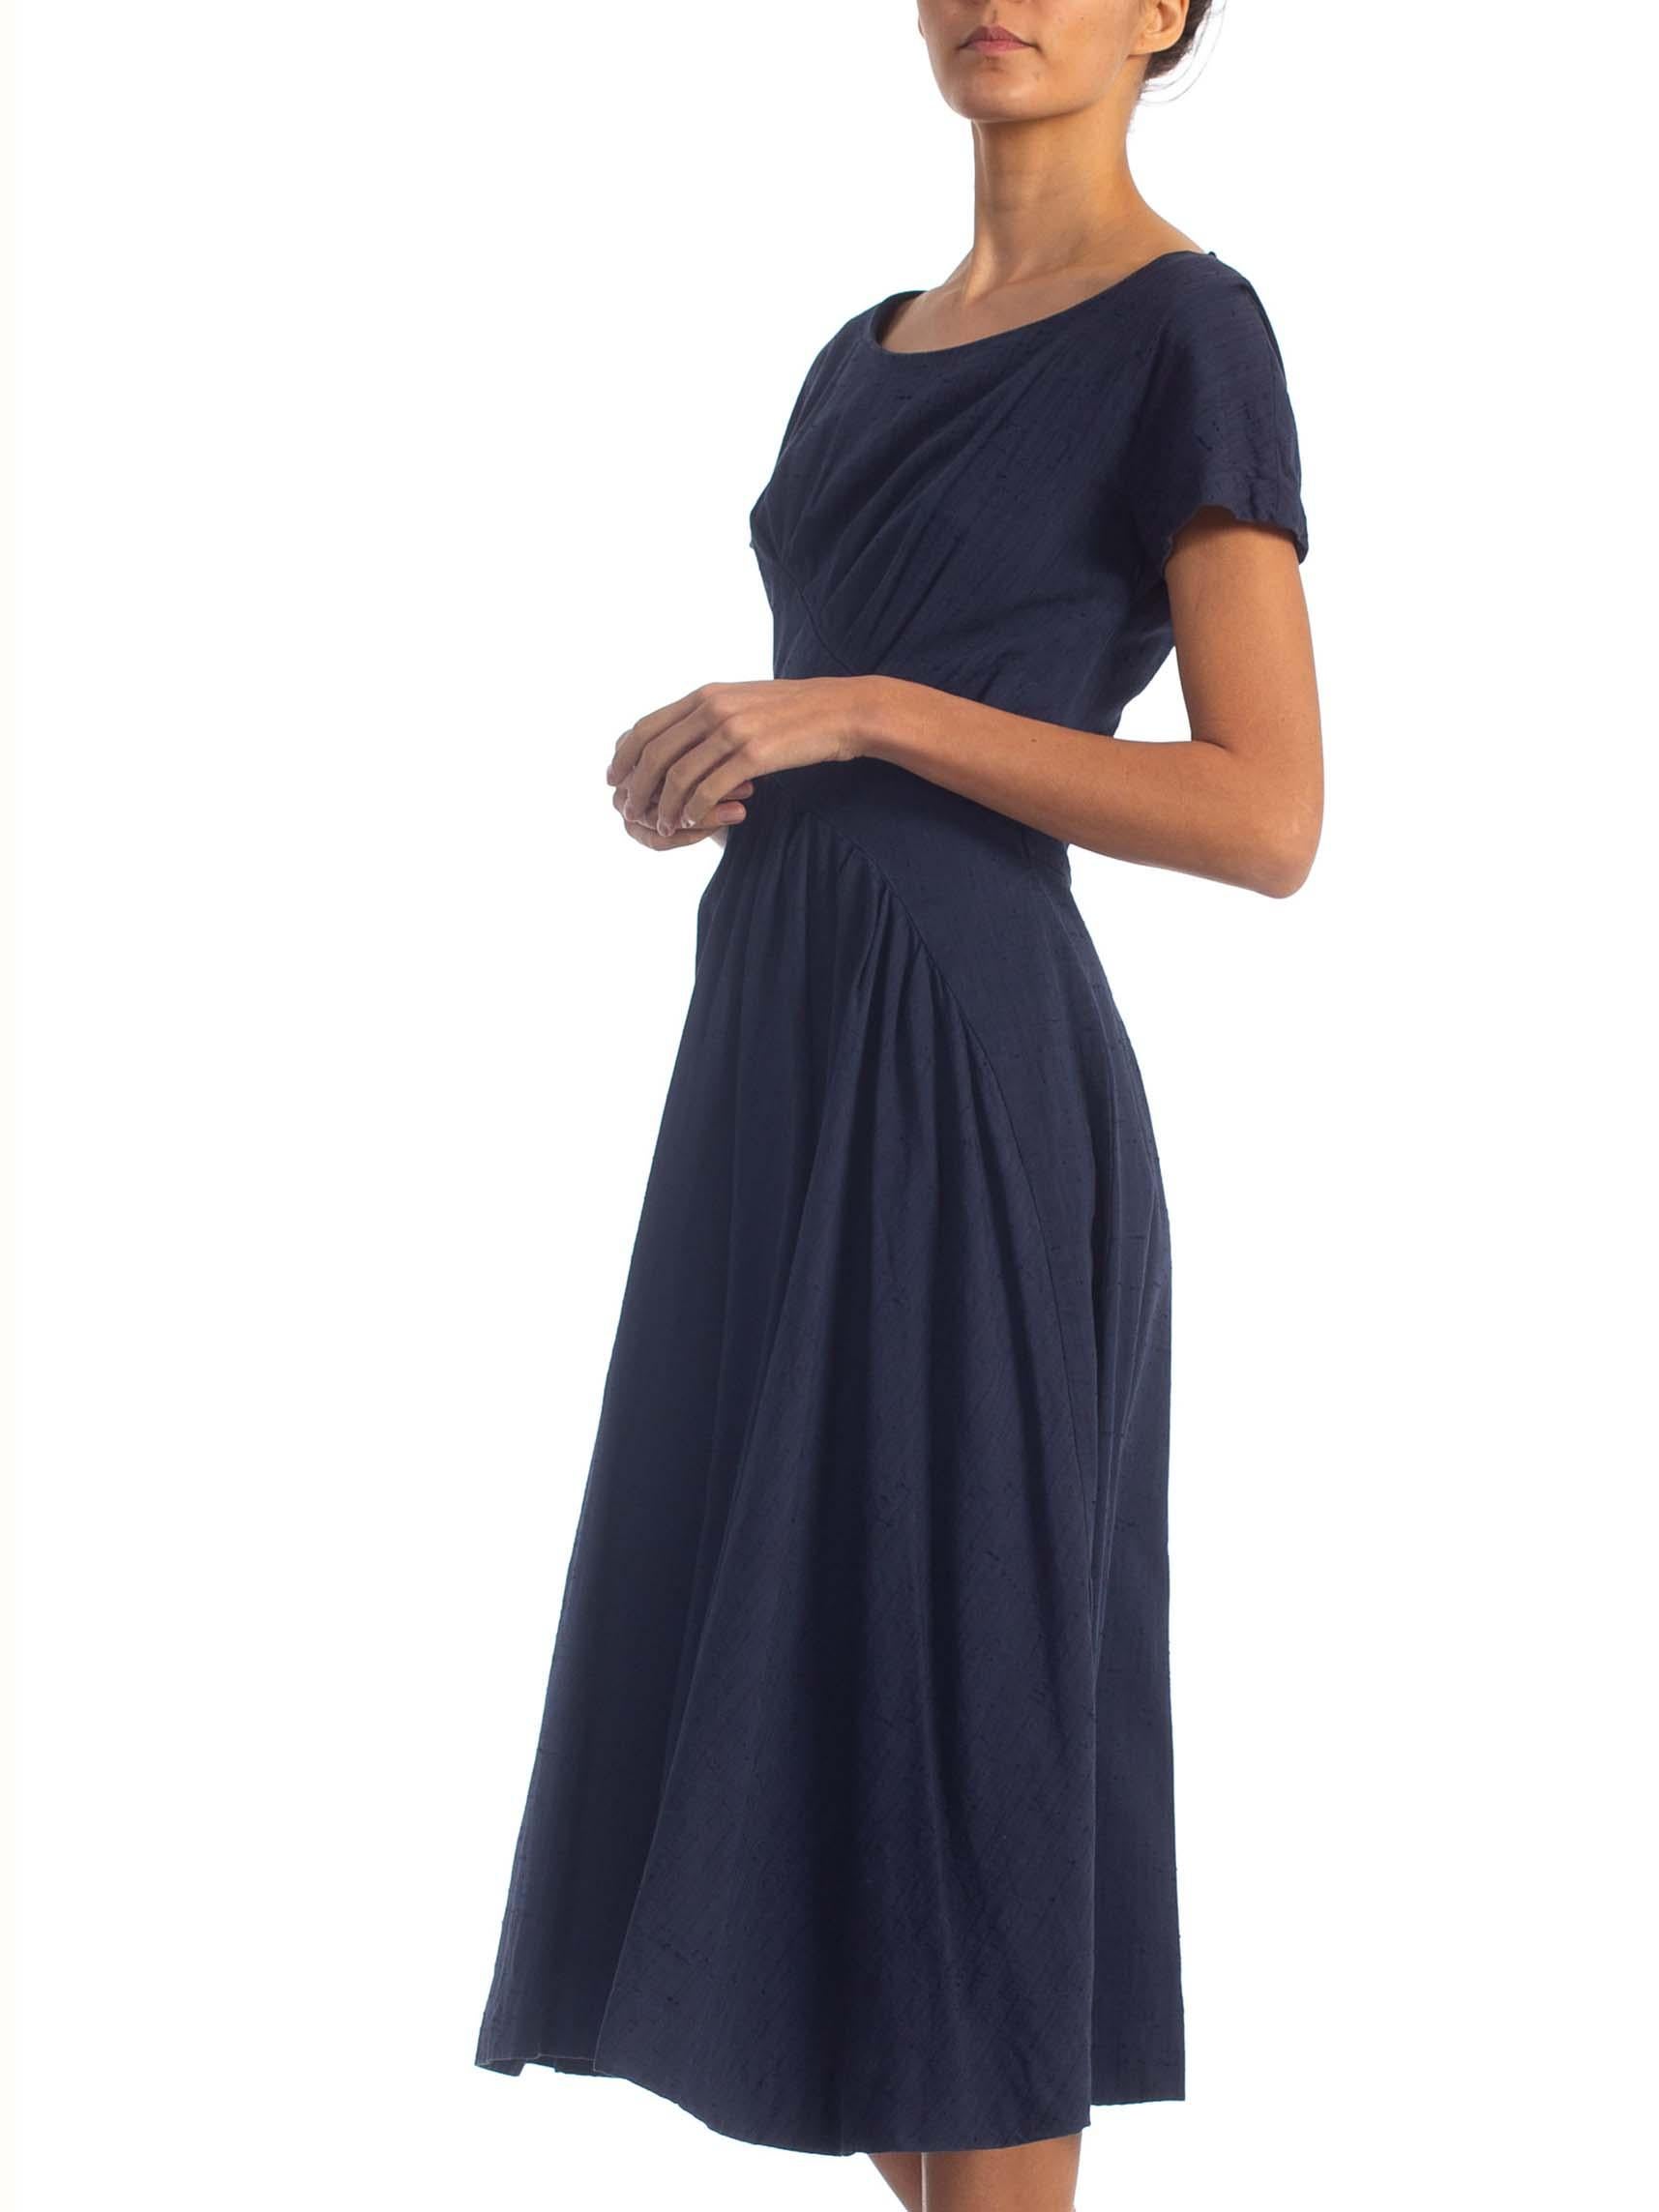 1950S SUZY PERETTE Navy Blue Cotton Blend Asymmetrical Drape Fit & Flare Dress 1